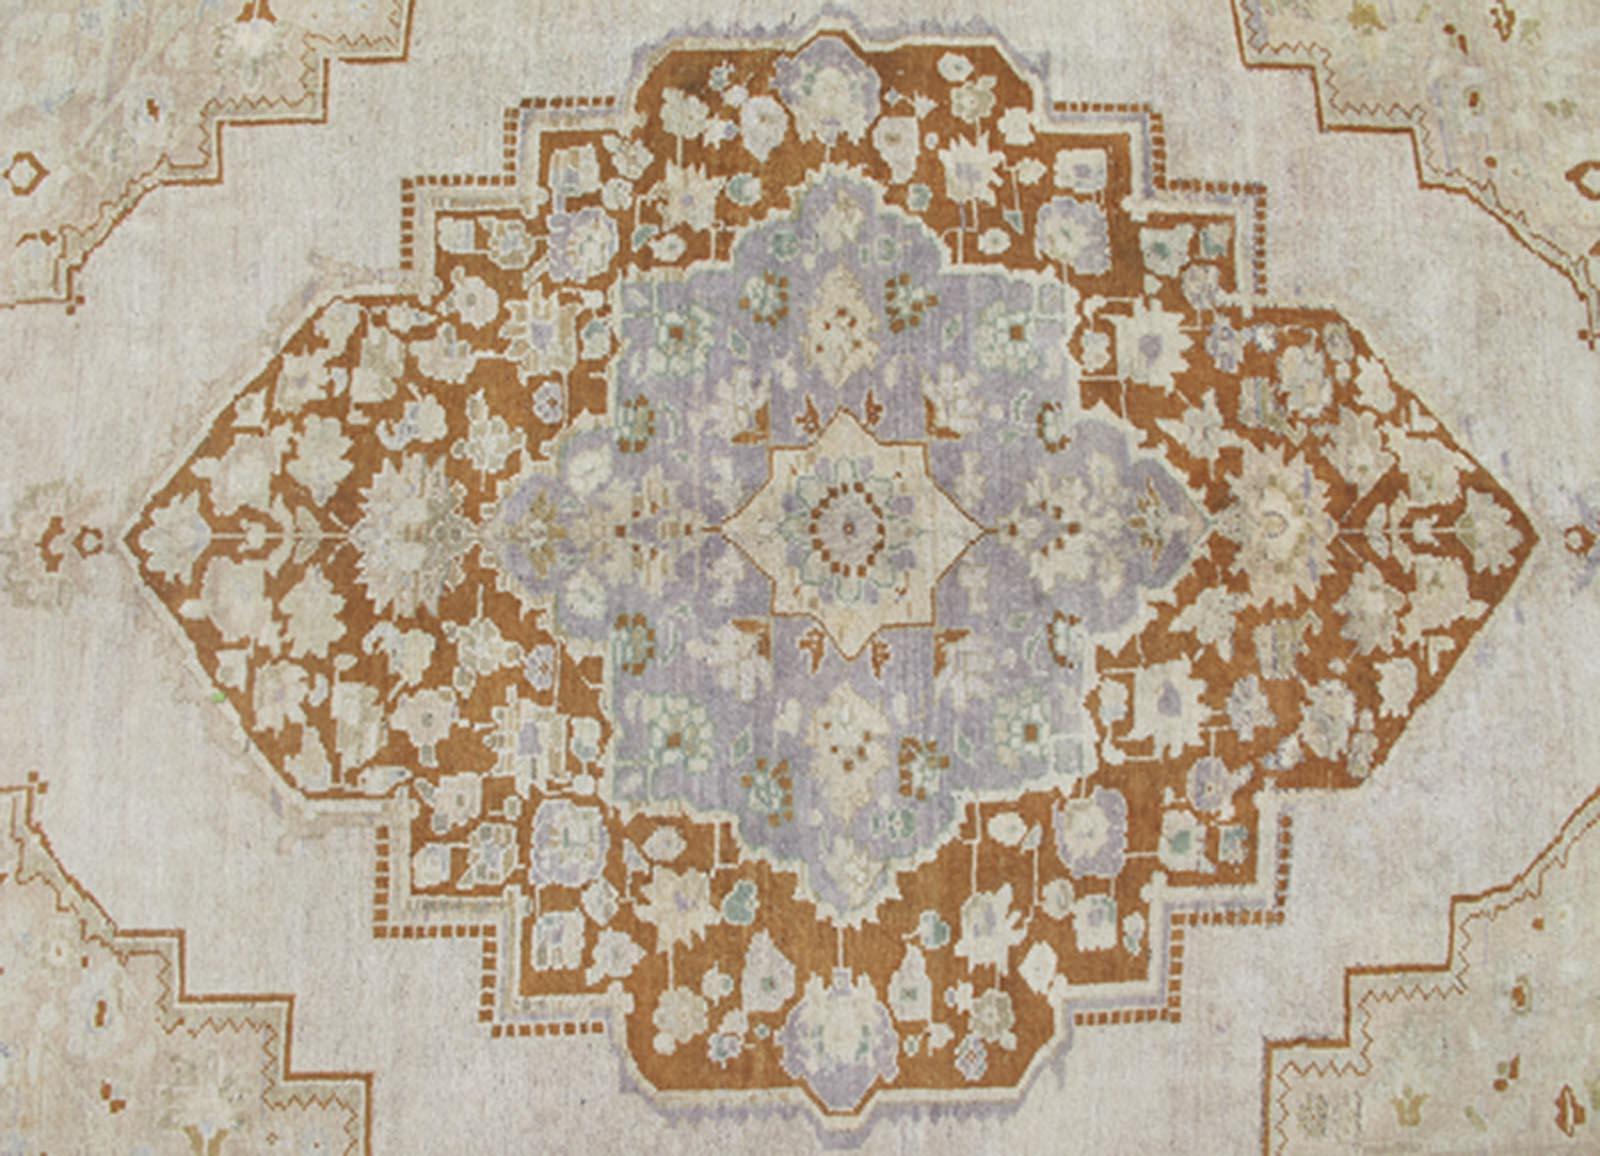 Mesures : 6'10 x 10'5

Ce tapis Oushak aux couleurs douces repose magnifiquement sur un champ de taupe clair élégant. Un grand médaillon de couleur lavande/gris et brun selle occupe le centre de la scène et est bien équilibré par quatre motifs